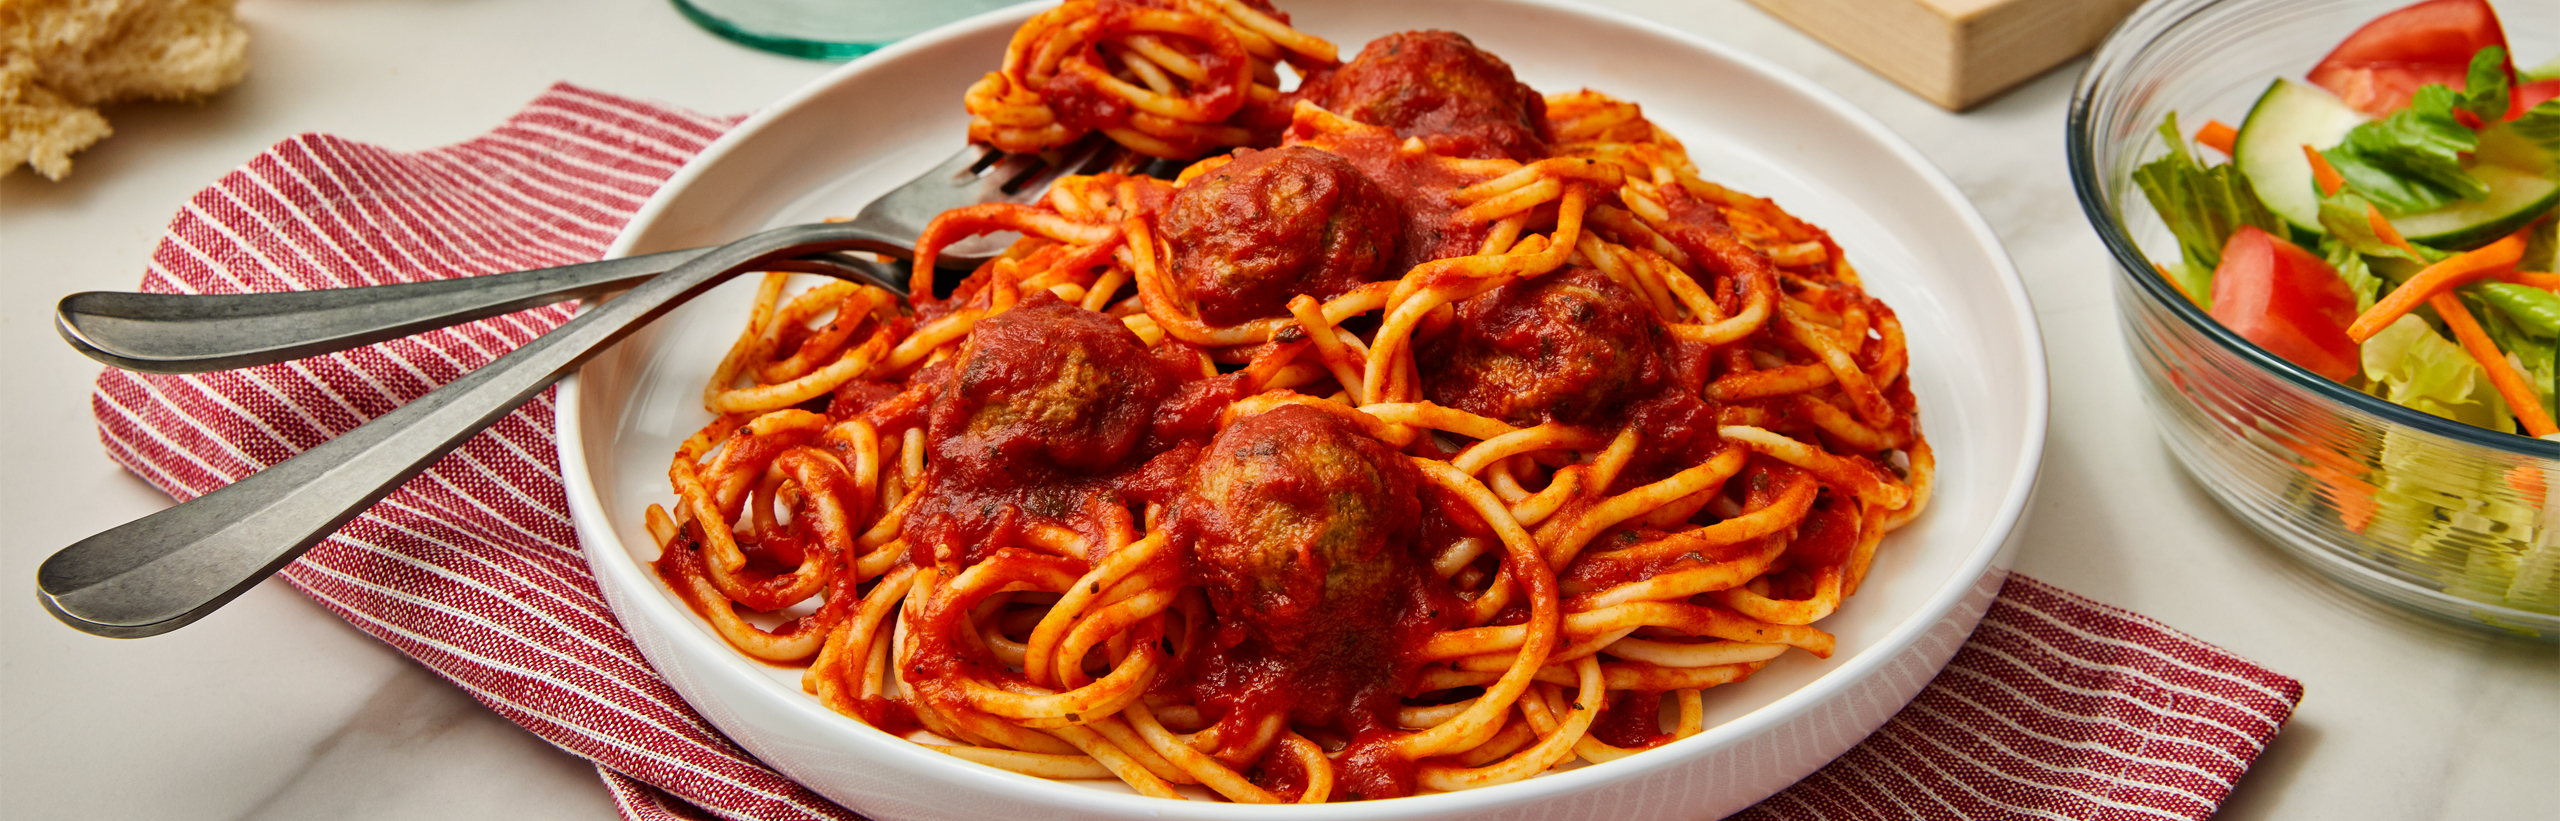 Quick Spaghetti Meatballs Prego Pasta Sauces